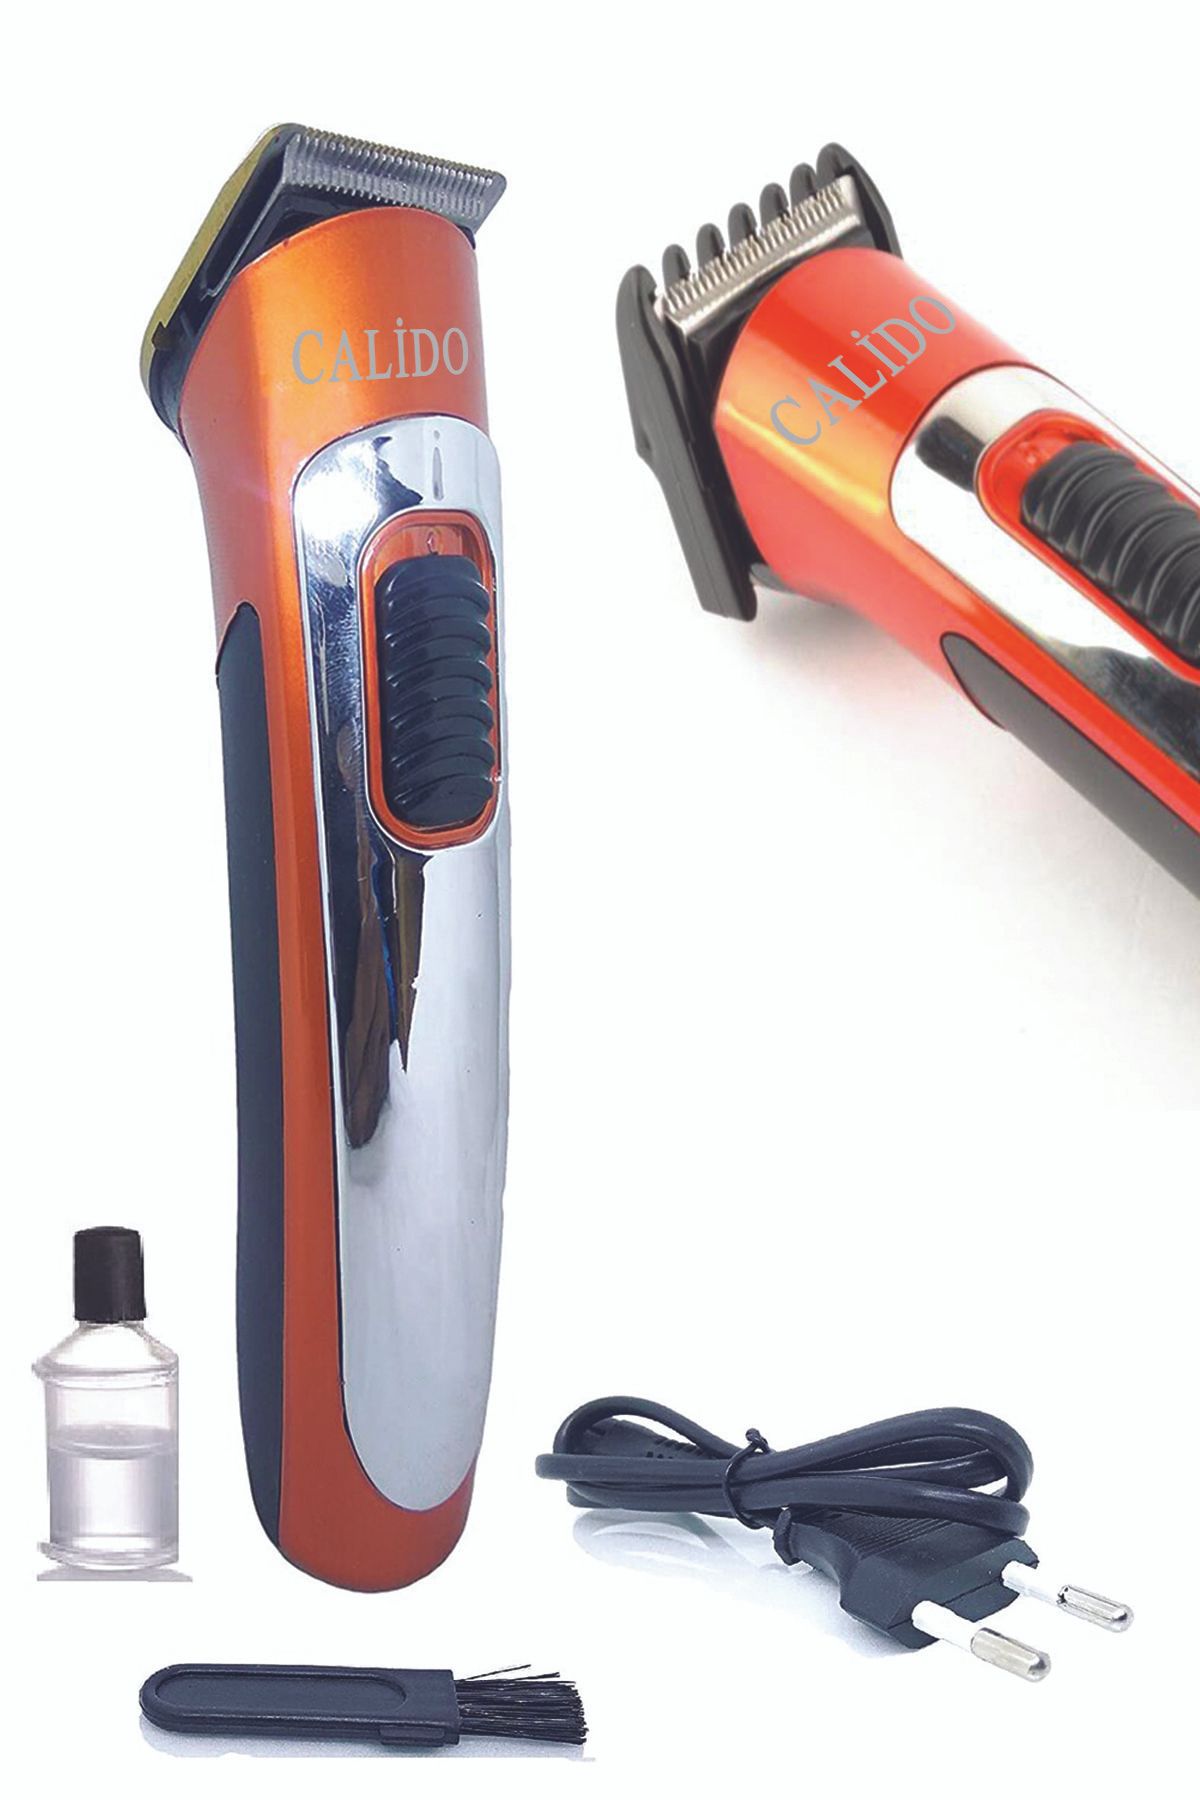 Calido Elektronik Şarjlı Saç Sakal Kesme Tıraş Makinesi Çelik Bıçak Ense Bıyık Düzeltme Bikini Bölgesi Tıraşı Rd-607